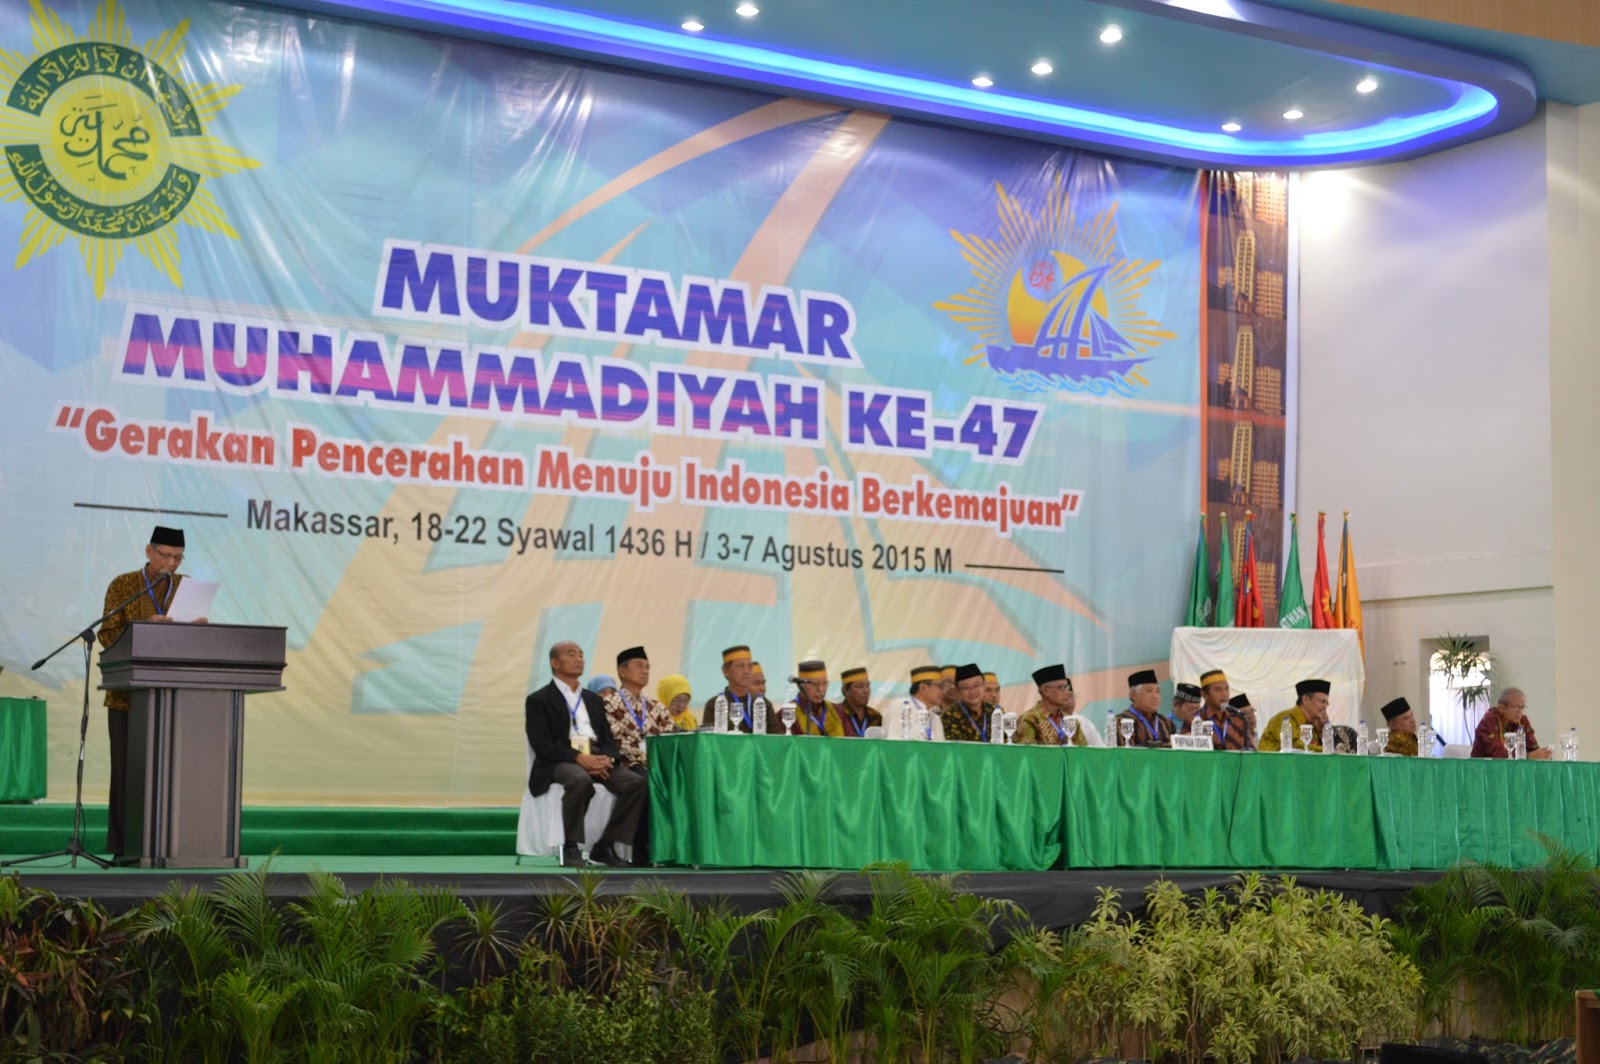 Muhammadiyah Studies: Muktamar Menunjukkan Muhammadiyah Berkemajuan dan